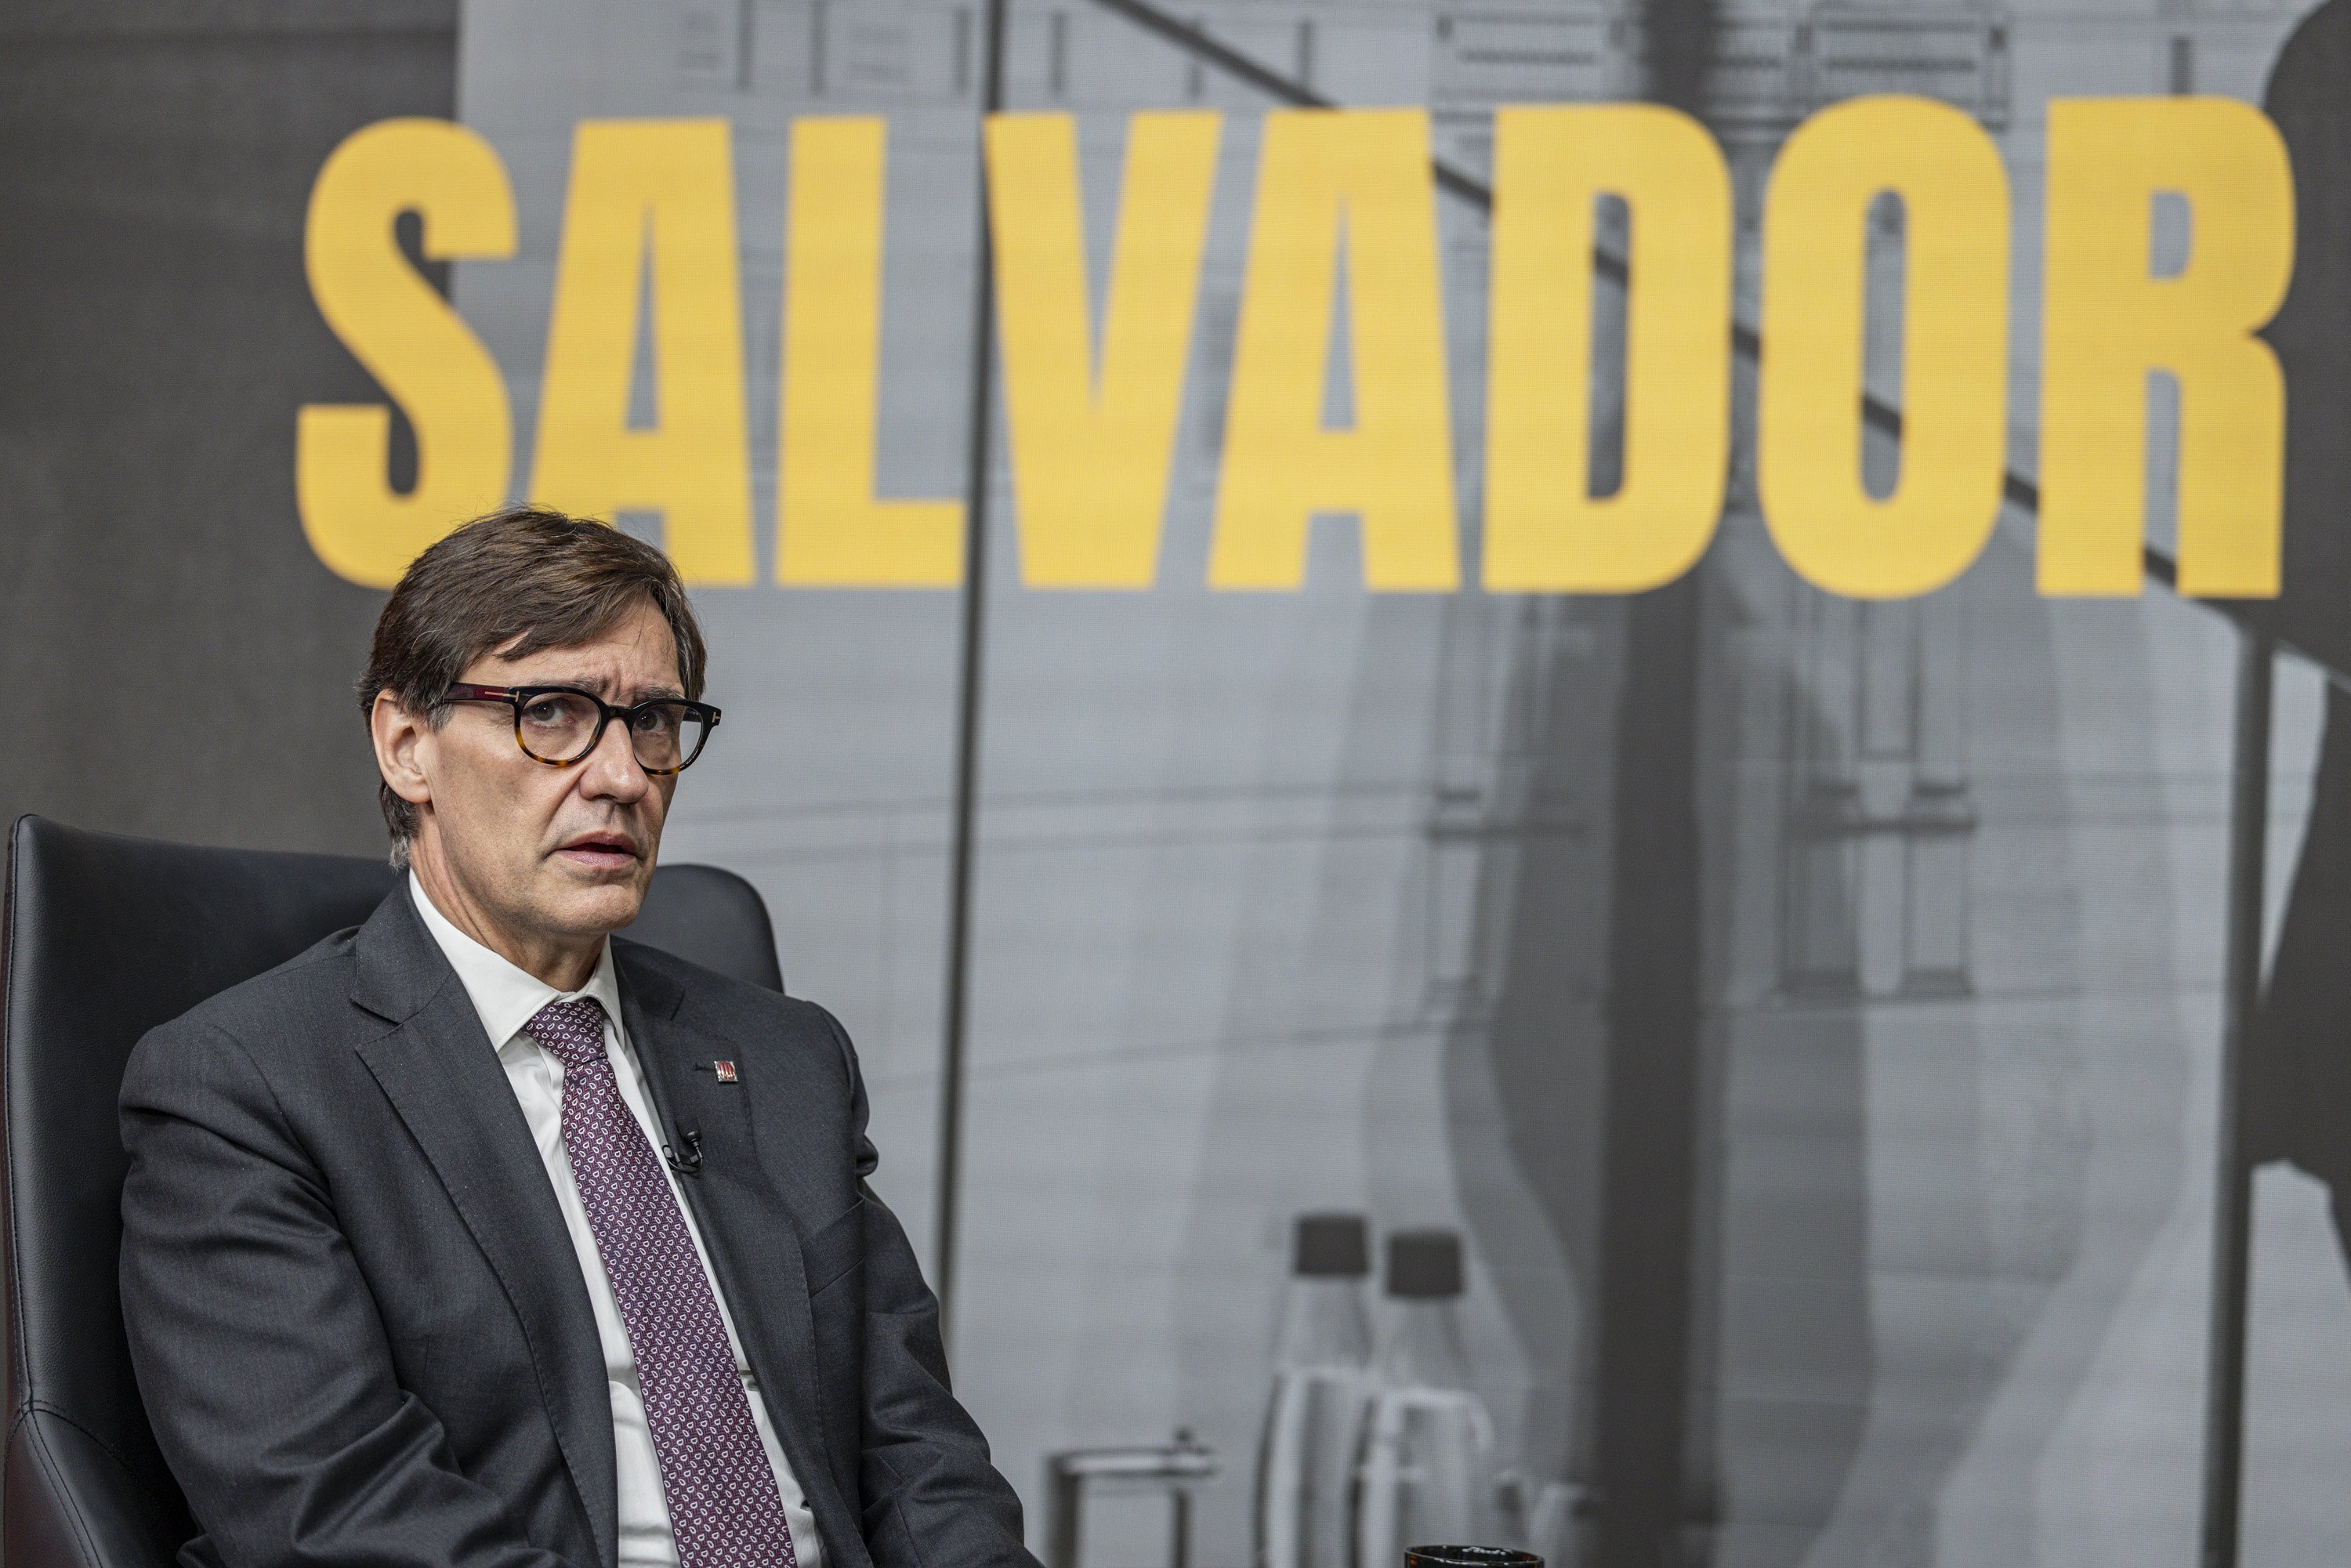 ¿Crees que Salvador Illa será el siguiente president de la Generalitat?